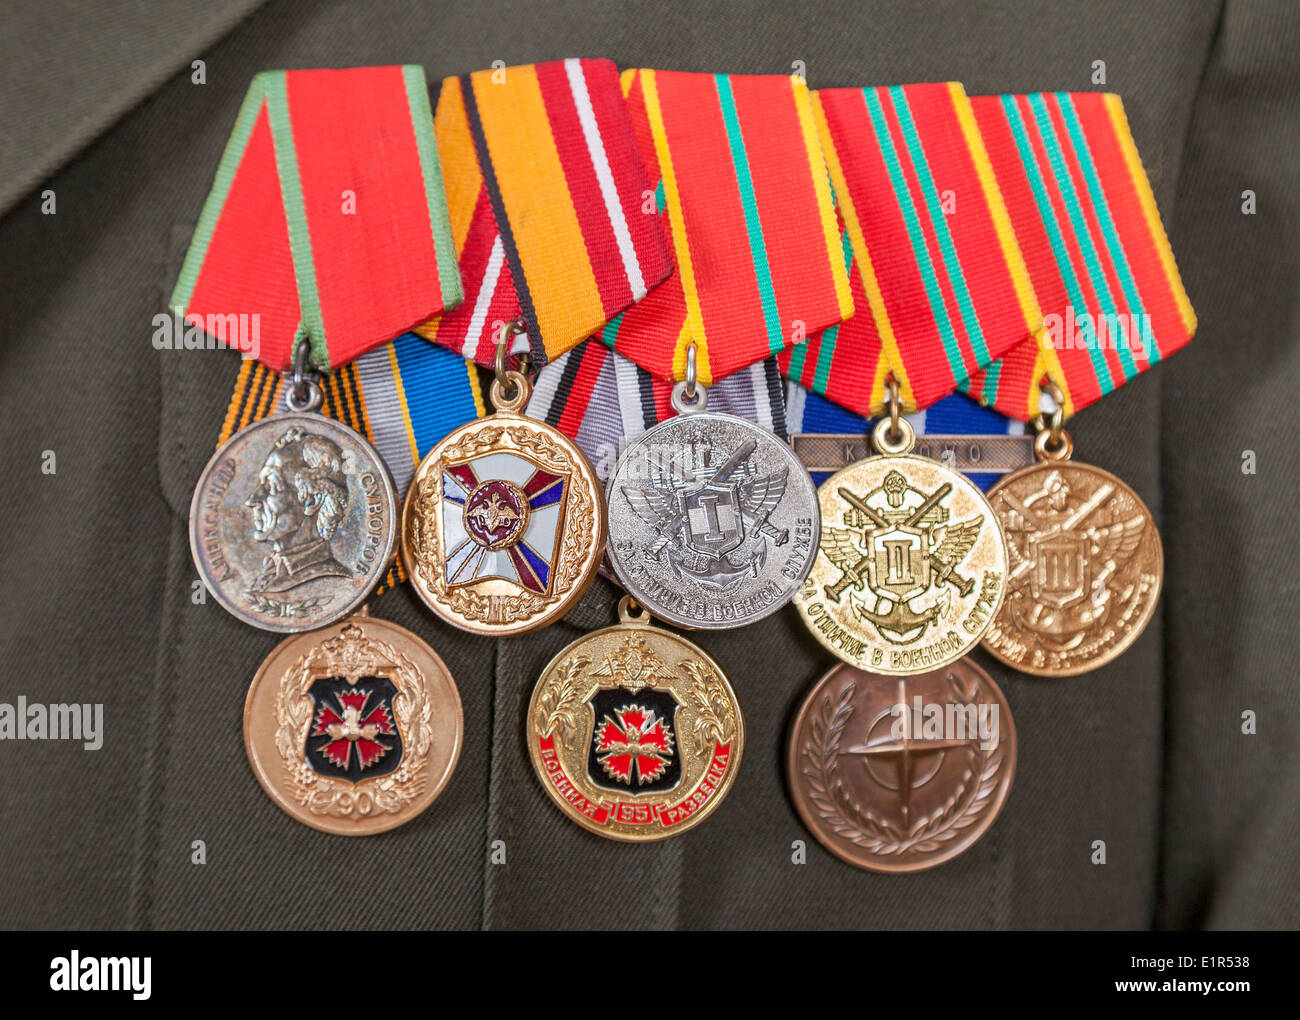 Медали нового образца. Медали в два ряда. Формы медалей. Ордена и медали на форме. Размещение орденов и медалей.